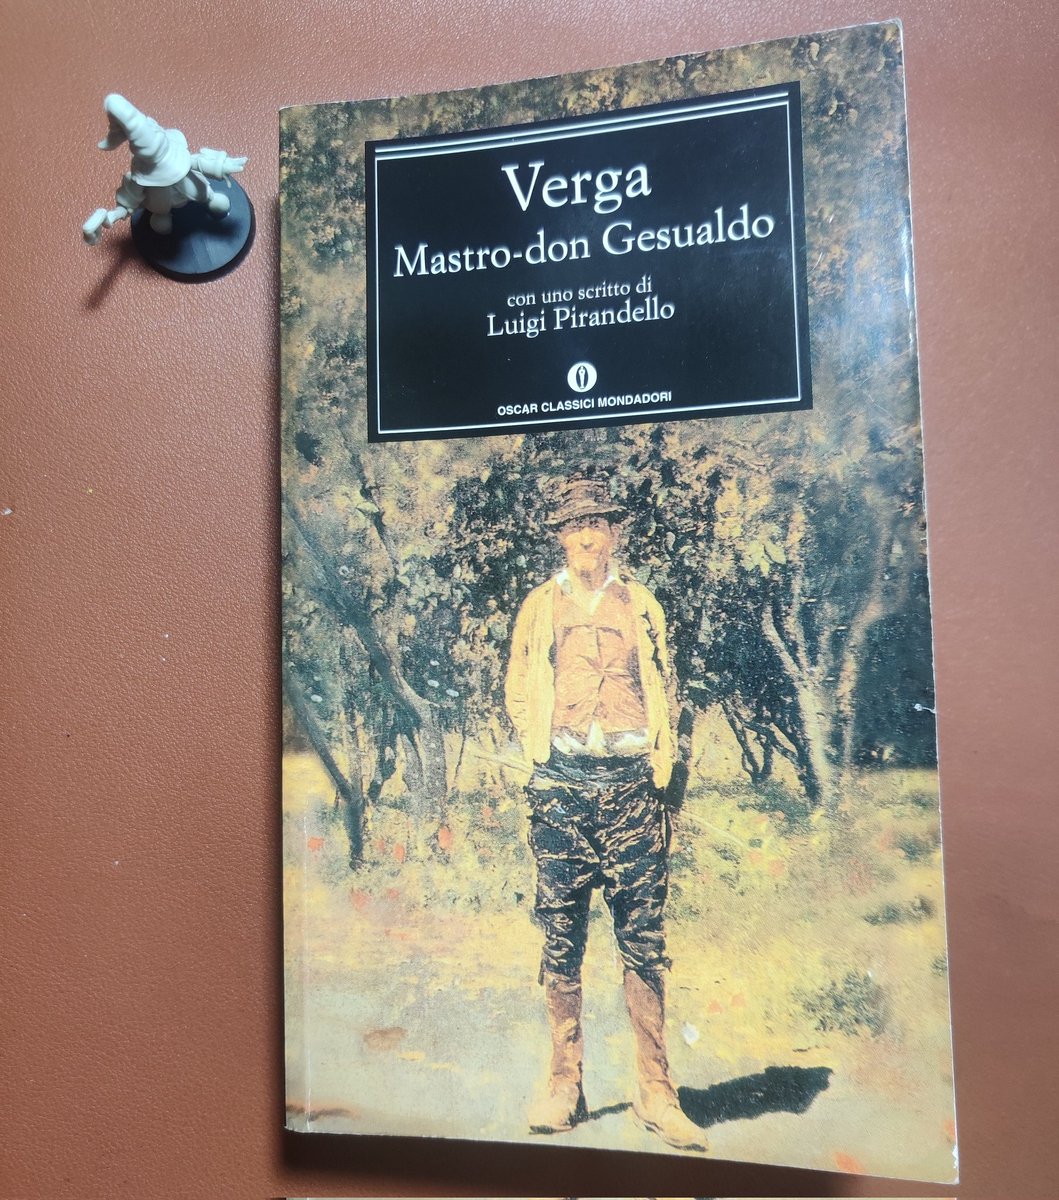 Mastro-don Gesualdo. G. Verga. #goodreads #libri #booklovers #books #letteratura #letteraturaitaliana #verismo #ciclodeivinti #giovanniverga